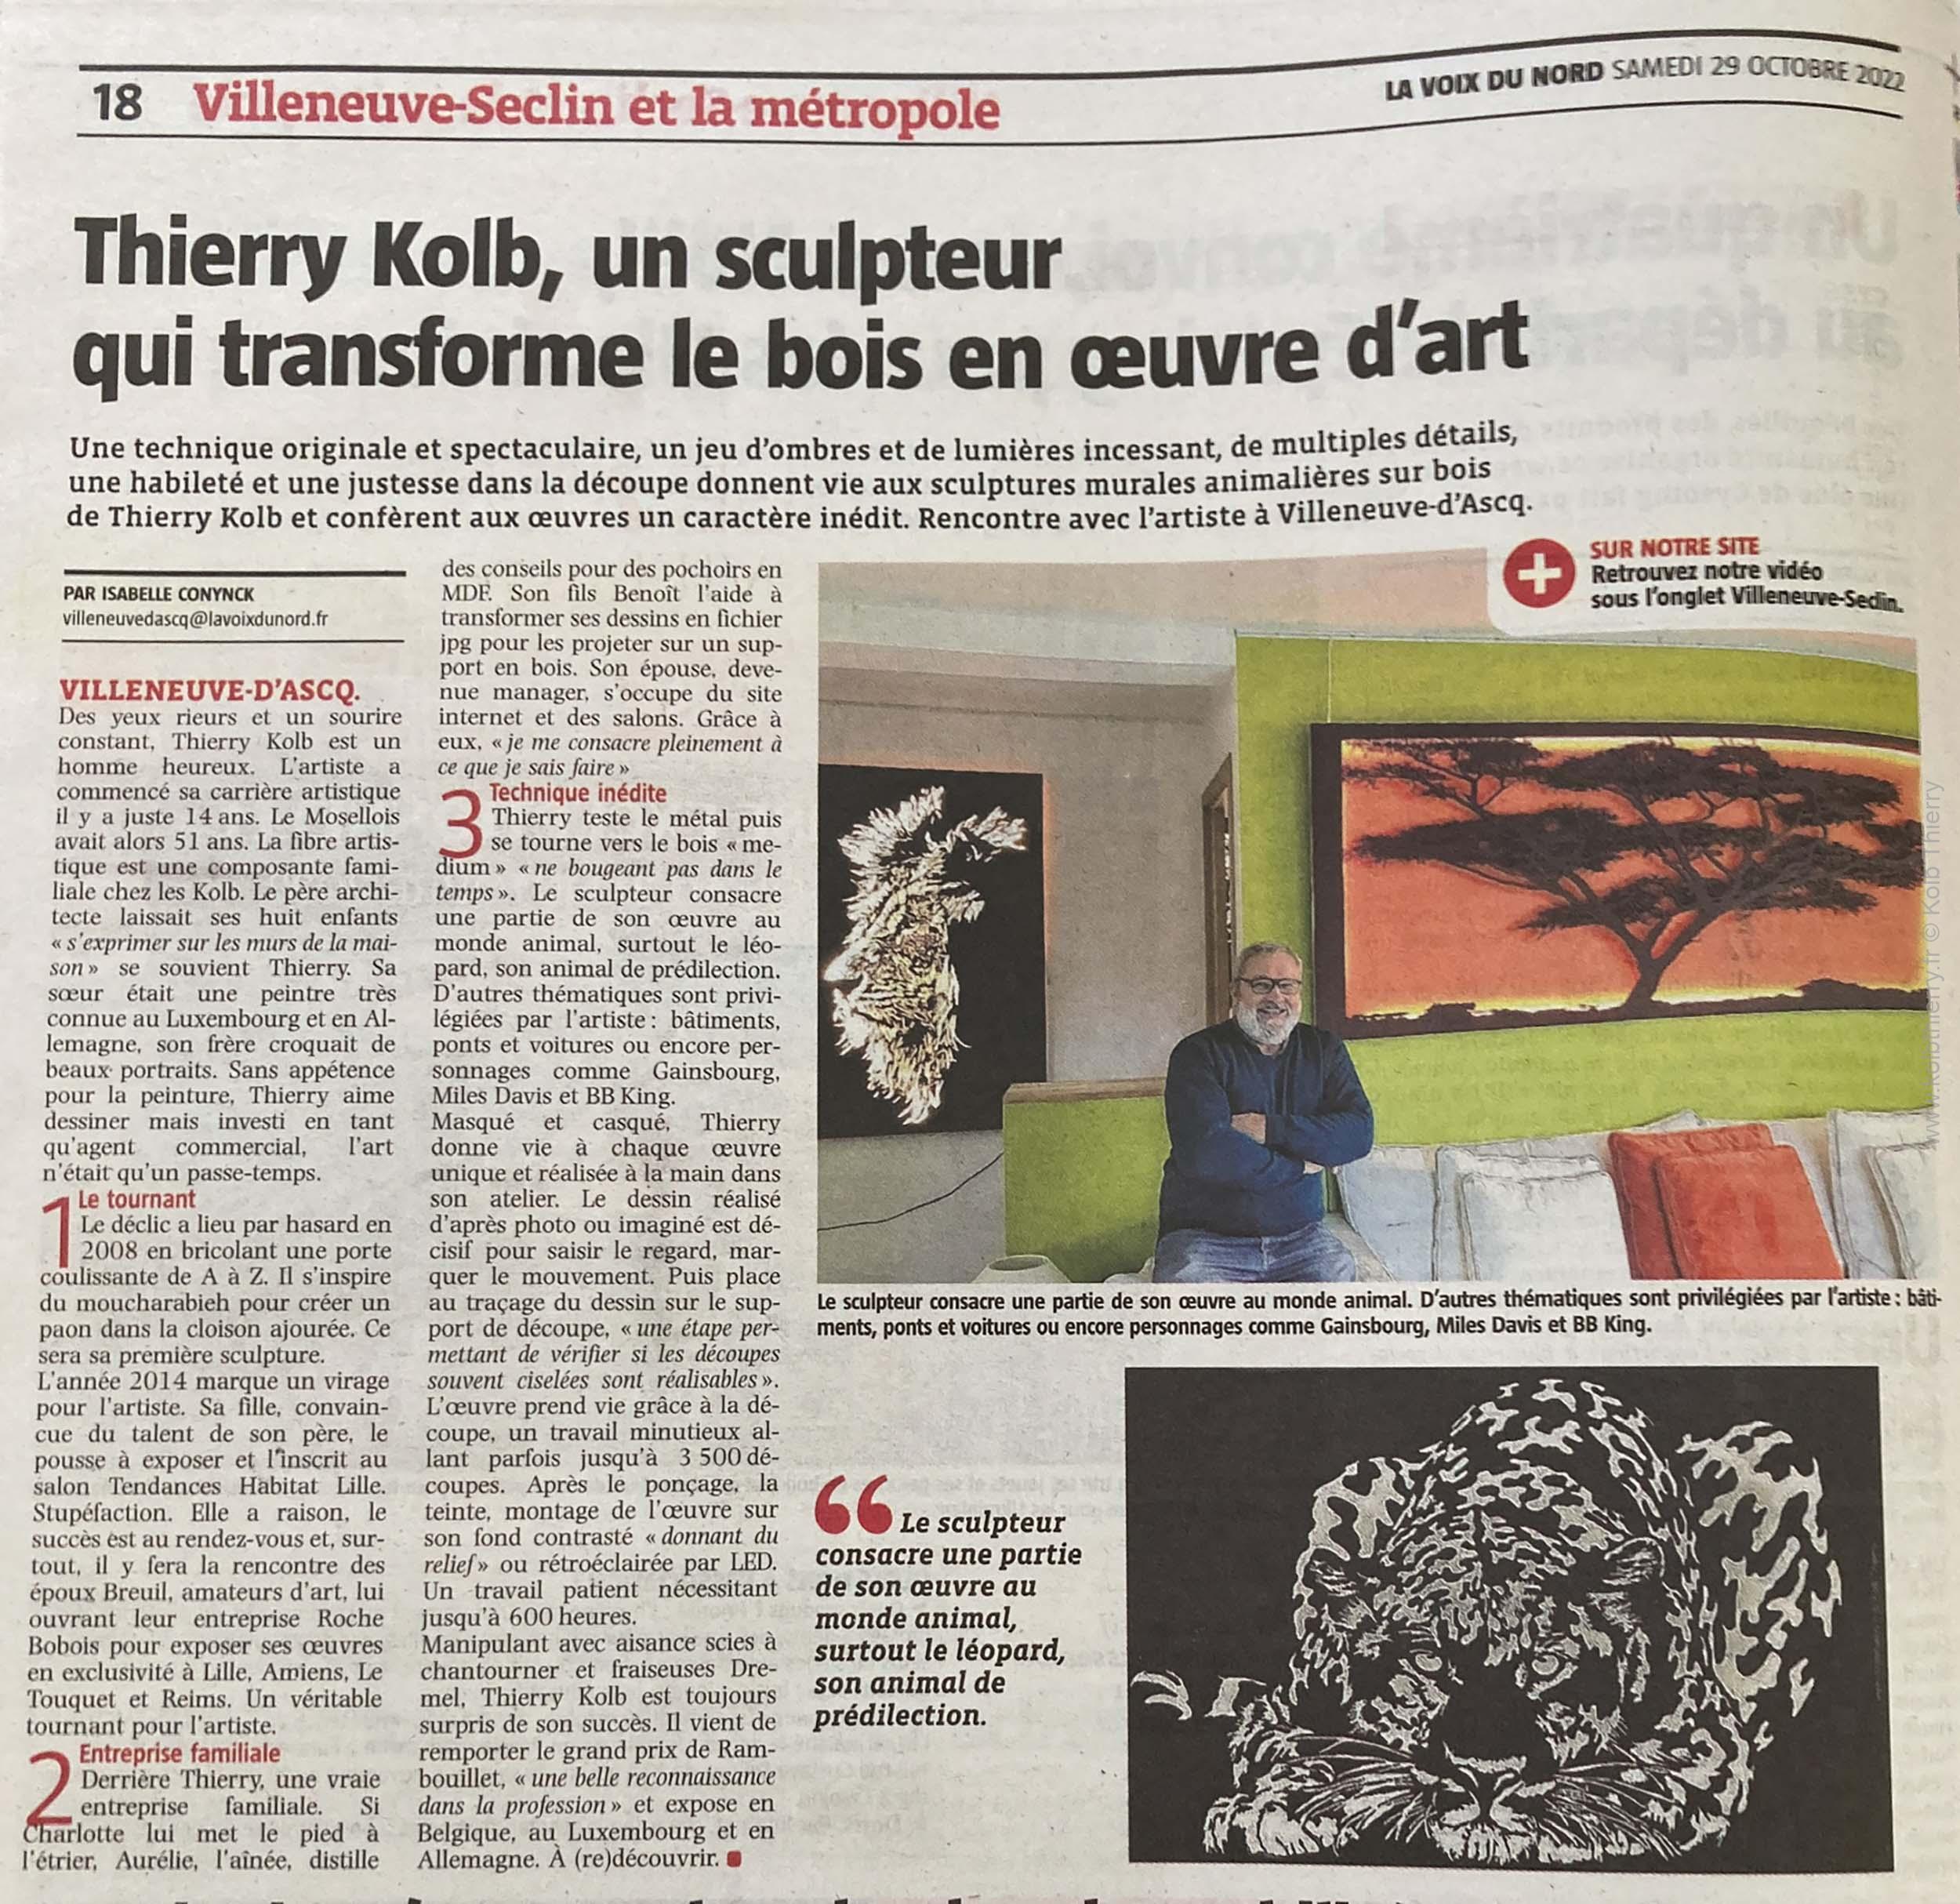 Thierry Kolb est interviewé par Isabelle Conynck, journaliste à la Voix du Nord. Article de presse parue dans l'édition de la Voix du Nord du samedi 29 octobre 2022